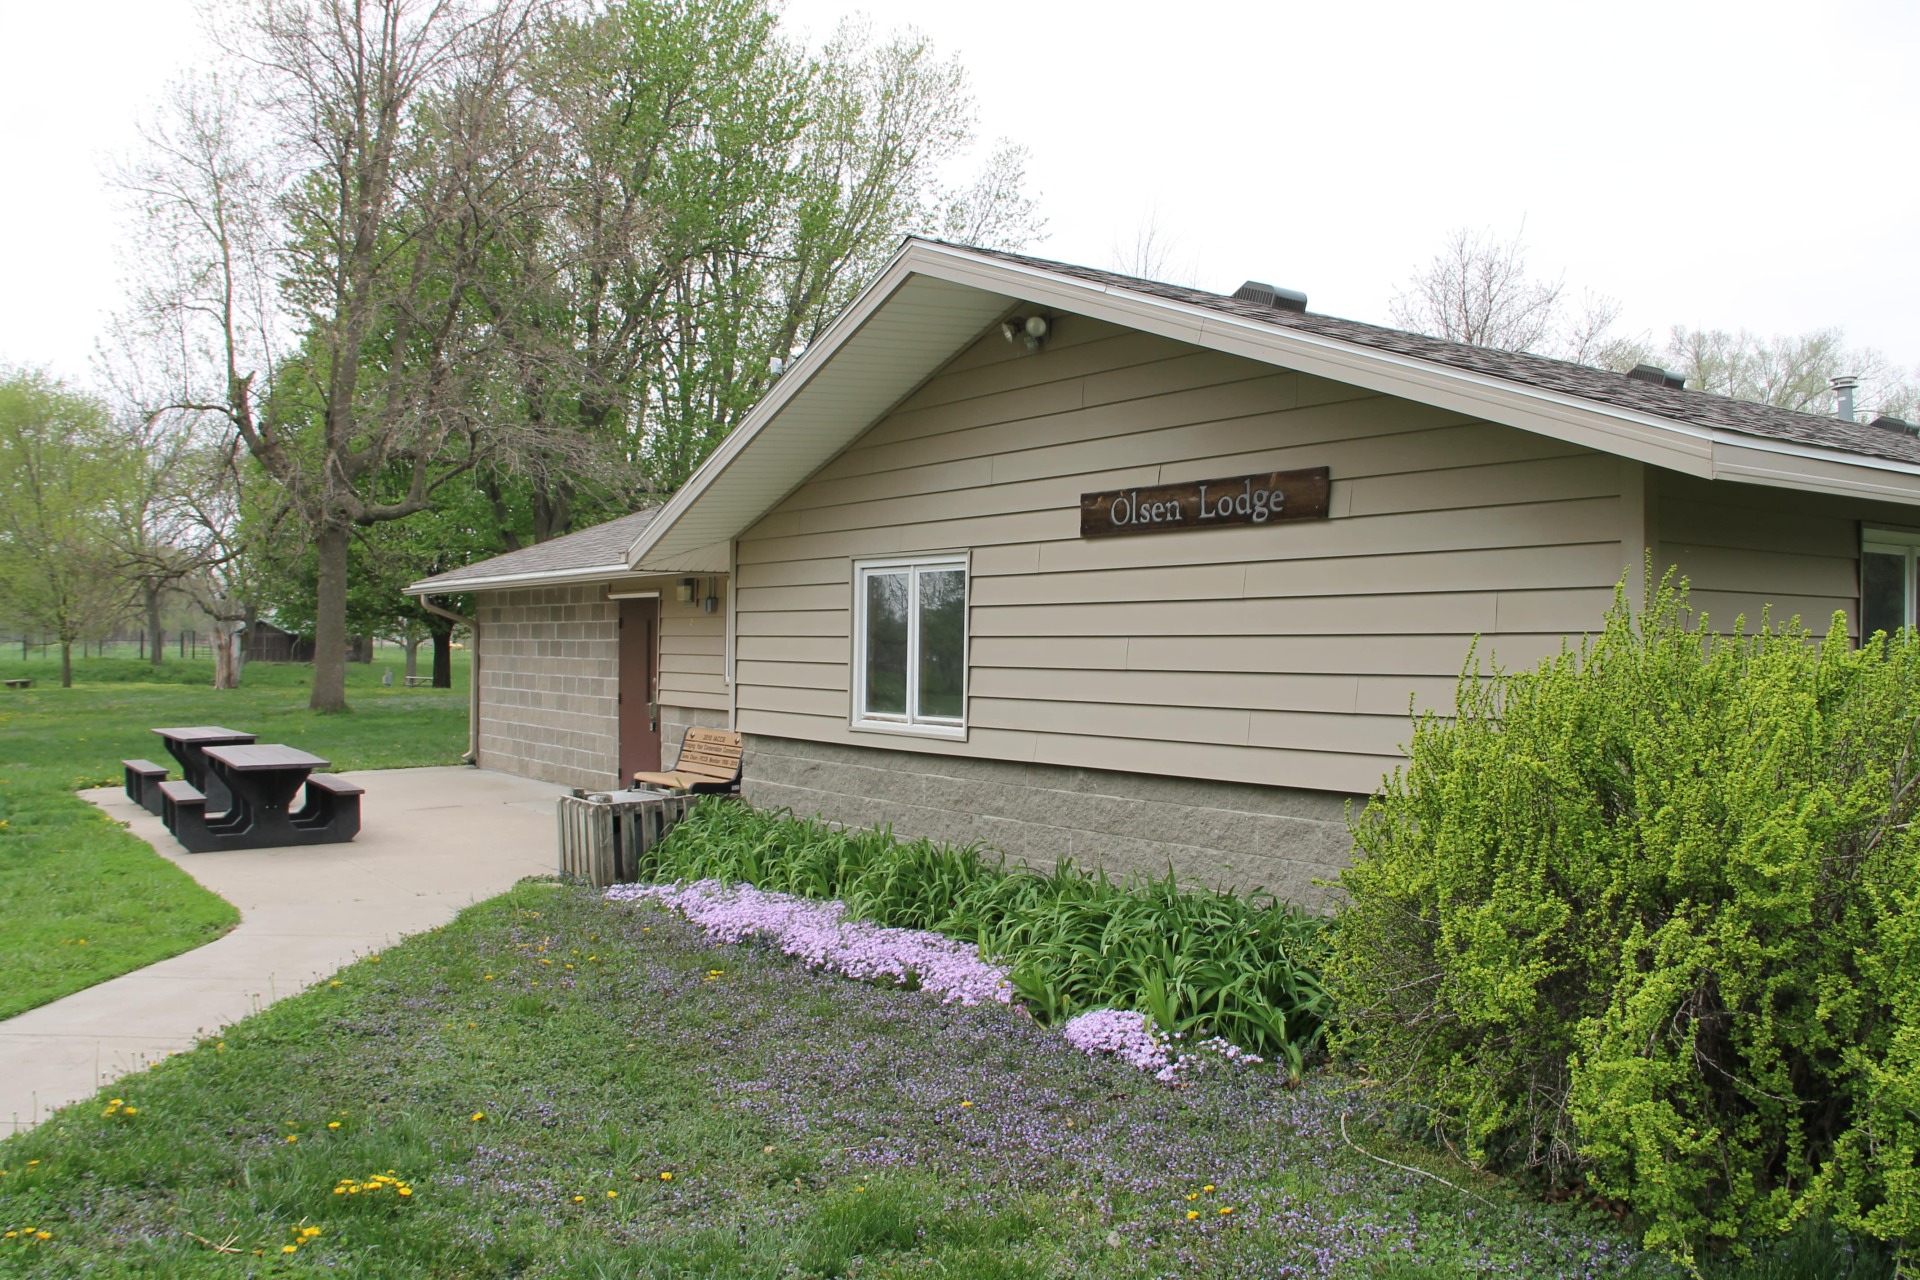 Olsen Lodge at Botna Bend Park